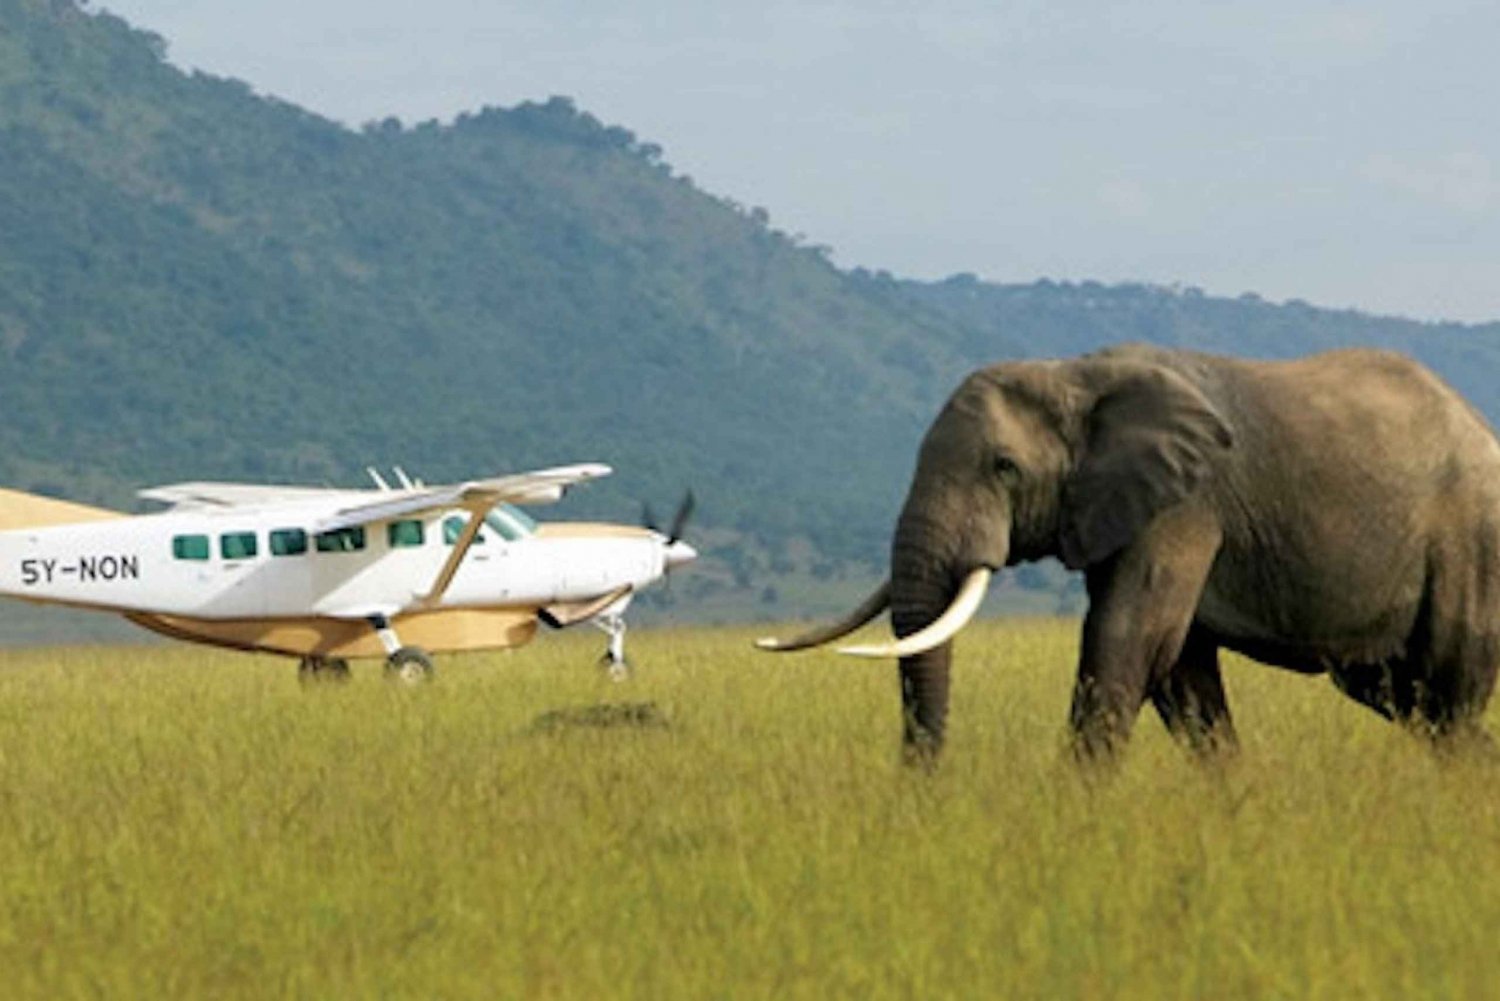 Nairobi: 3 päivän Masai Mara -safari luksuslodgella ja lennot